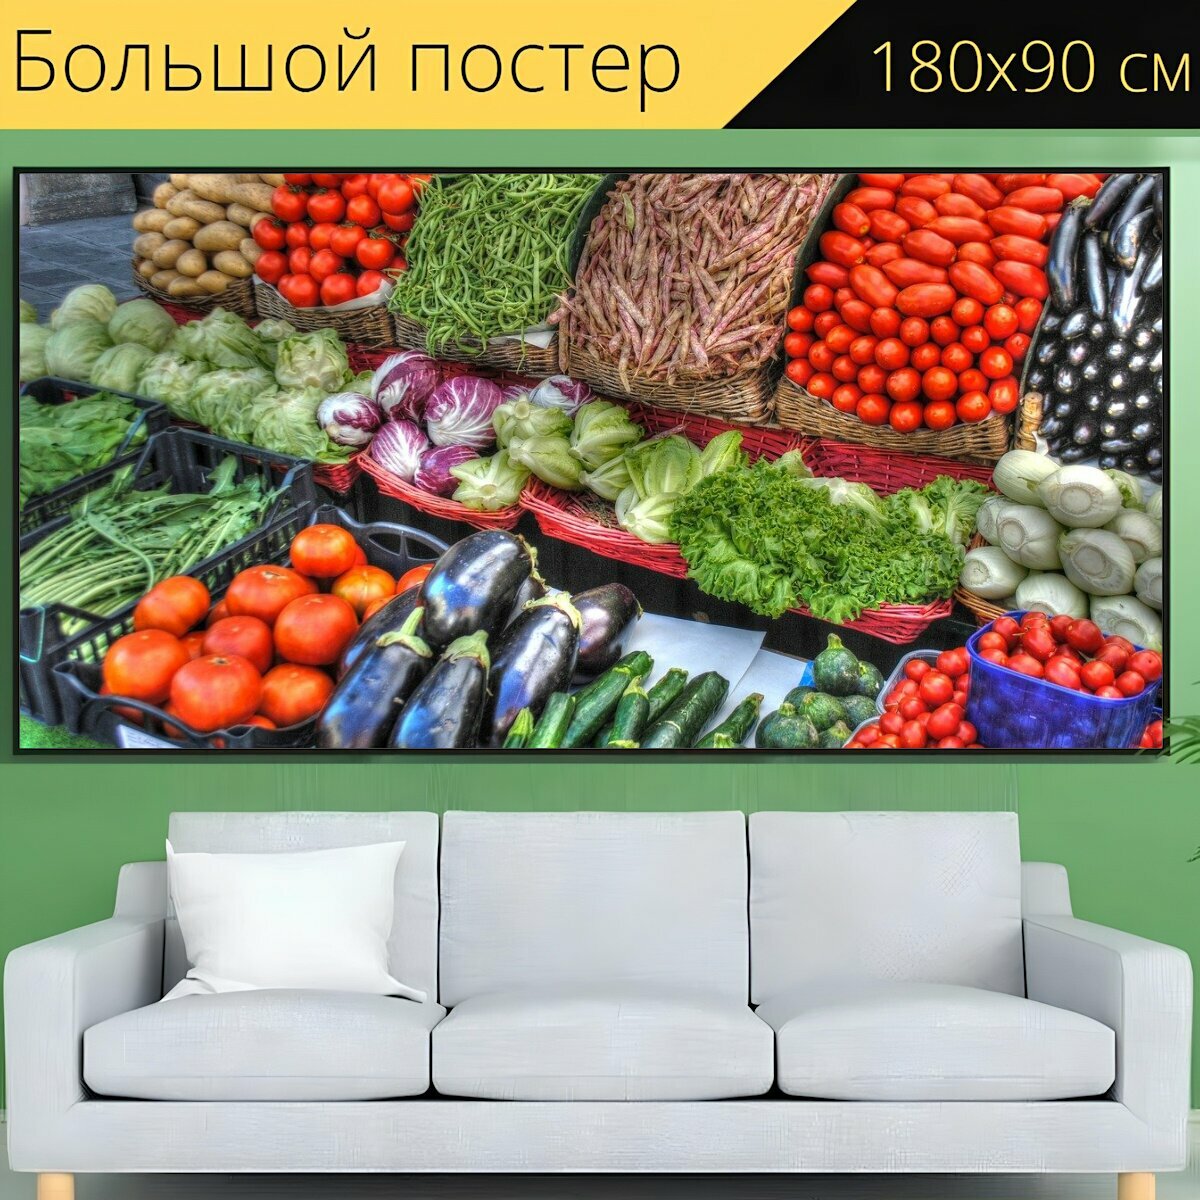 Большой постер "Овощи, рынок, помидоры" 180 x 90 см. для интерьера